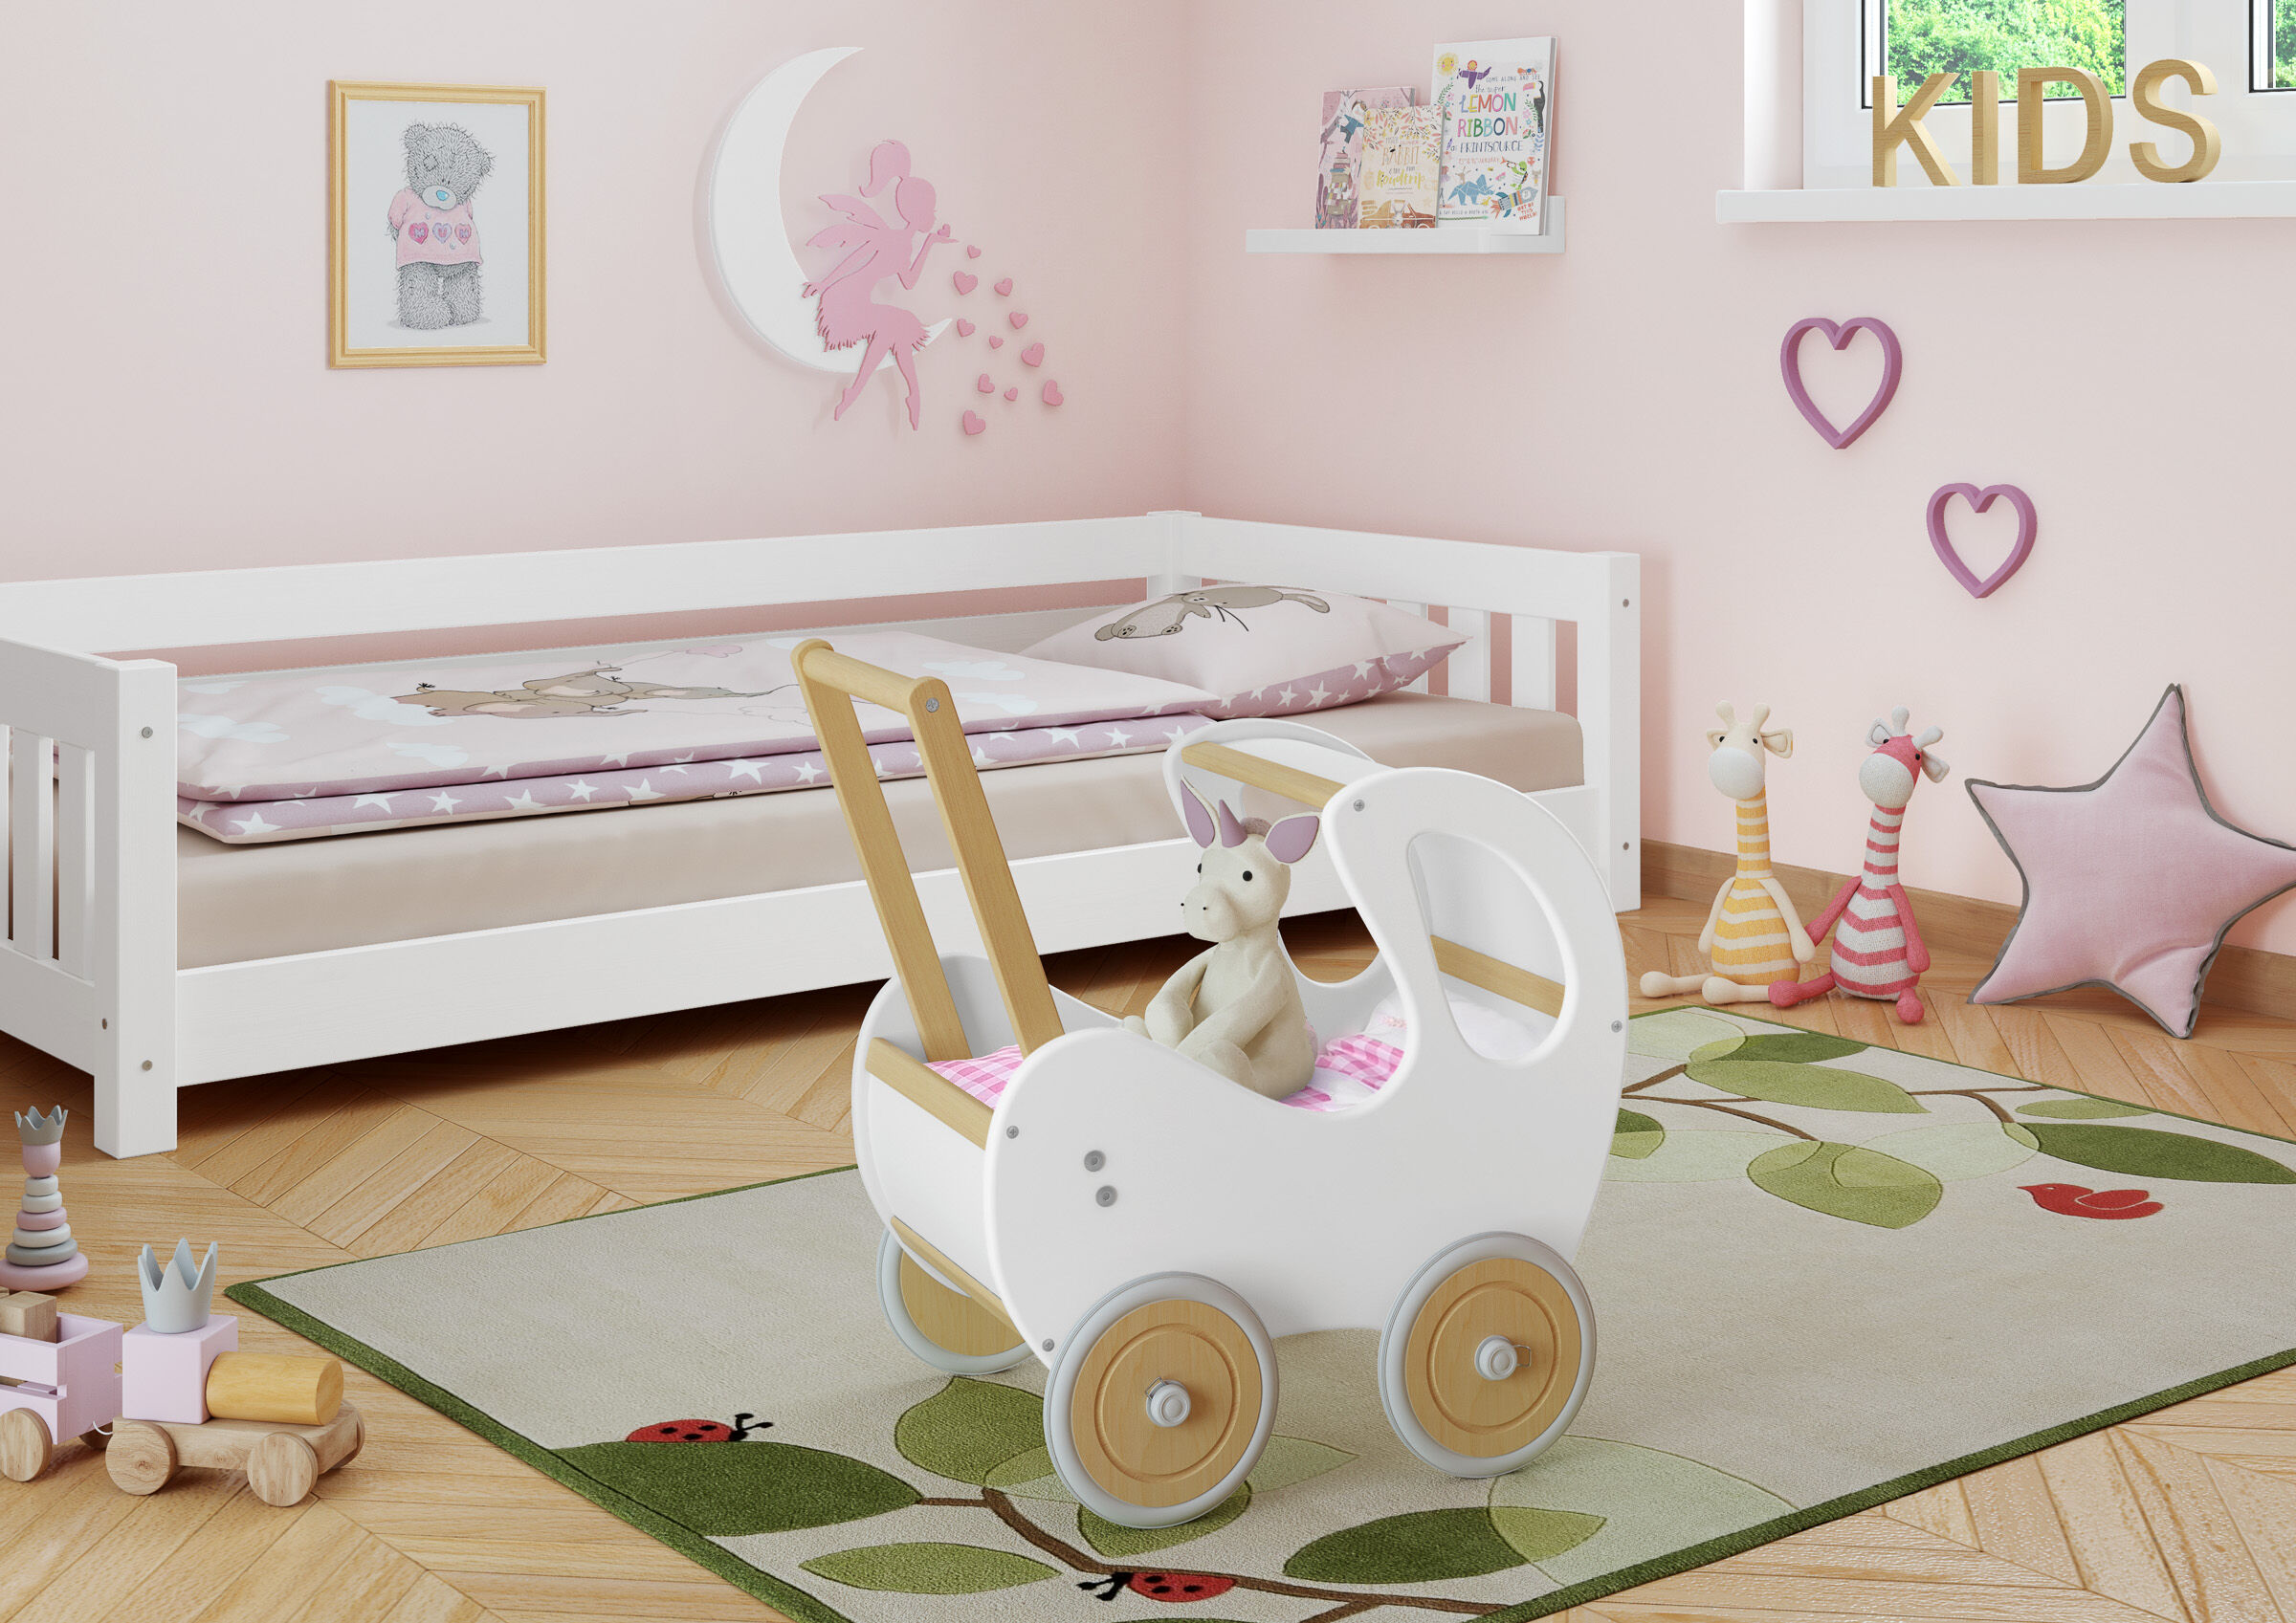 Solida carrozzina bianca per bambini e bambolotti in legno massello 934-3100